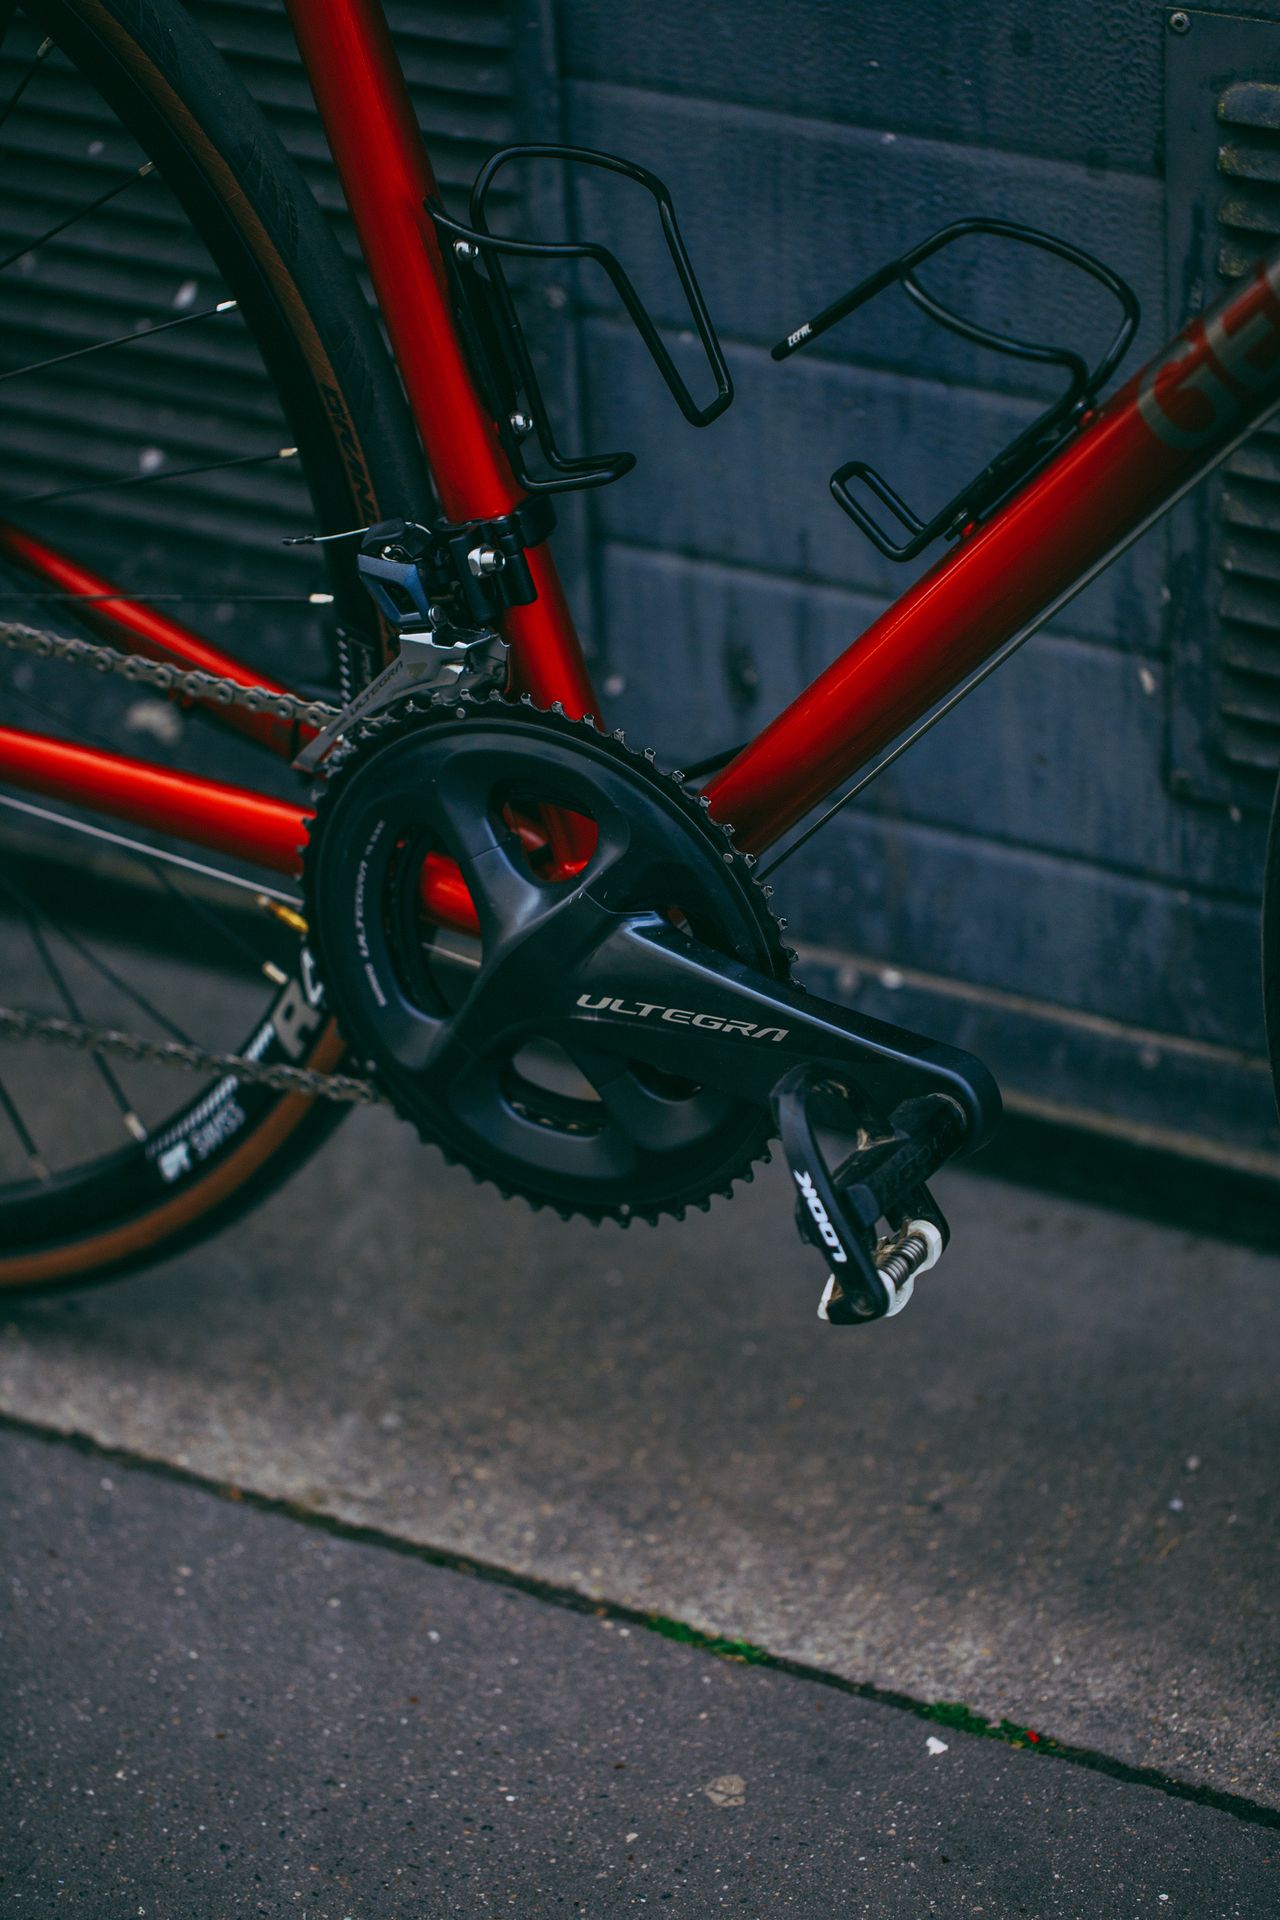 Magasin de cycles et atelier de réparation et montage vélo à la carte à Paris 13eme spécialisé dans le gravel et le voyage. Pédalier Shimano Ultegra